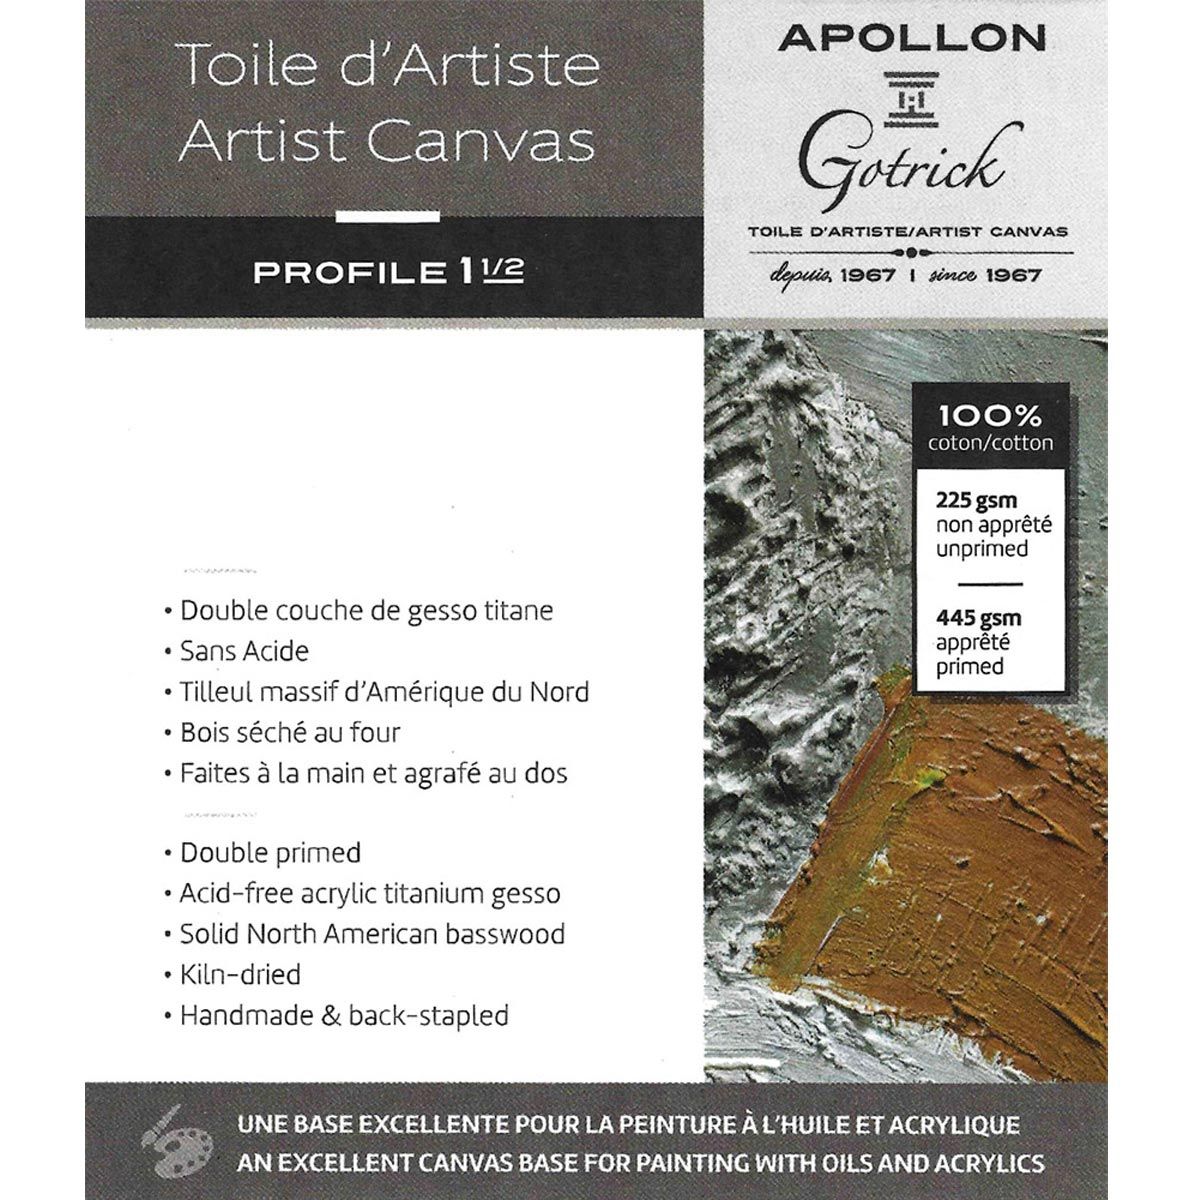 Apollon Gotrick Gallery Artist Canvas Profile 1½" - 8" x 24"